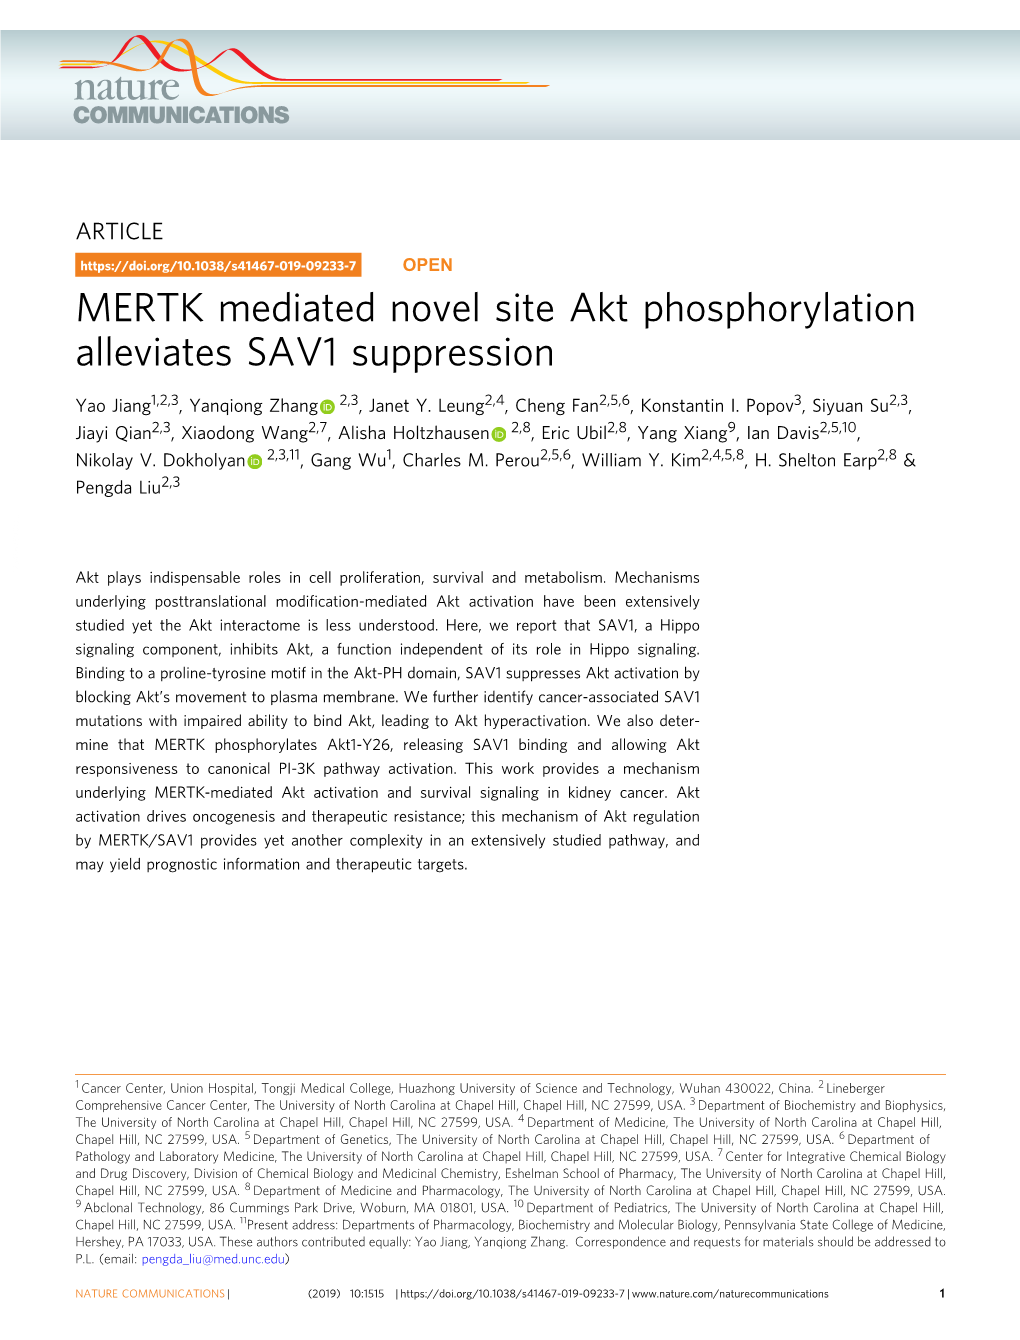 MERTK Mediated Novel Site Akt Phosphorylation Alleviates SAV1 Suppression